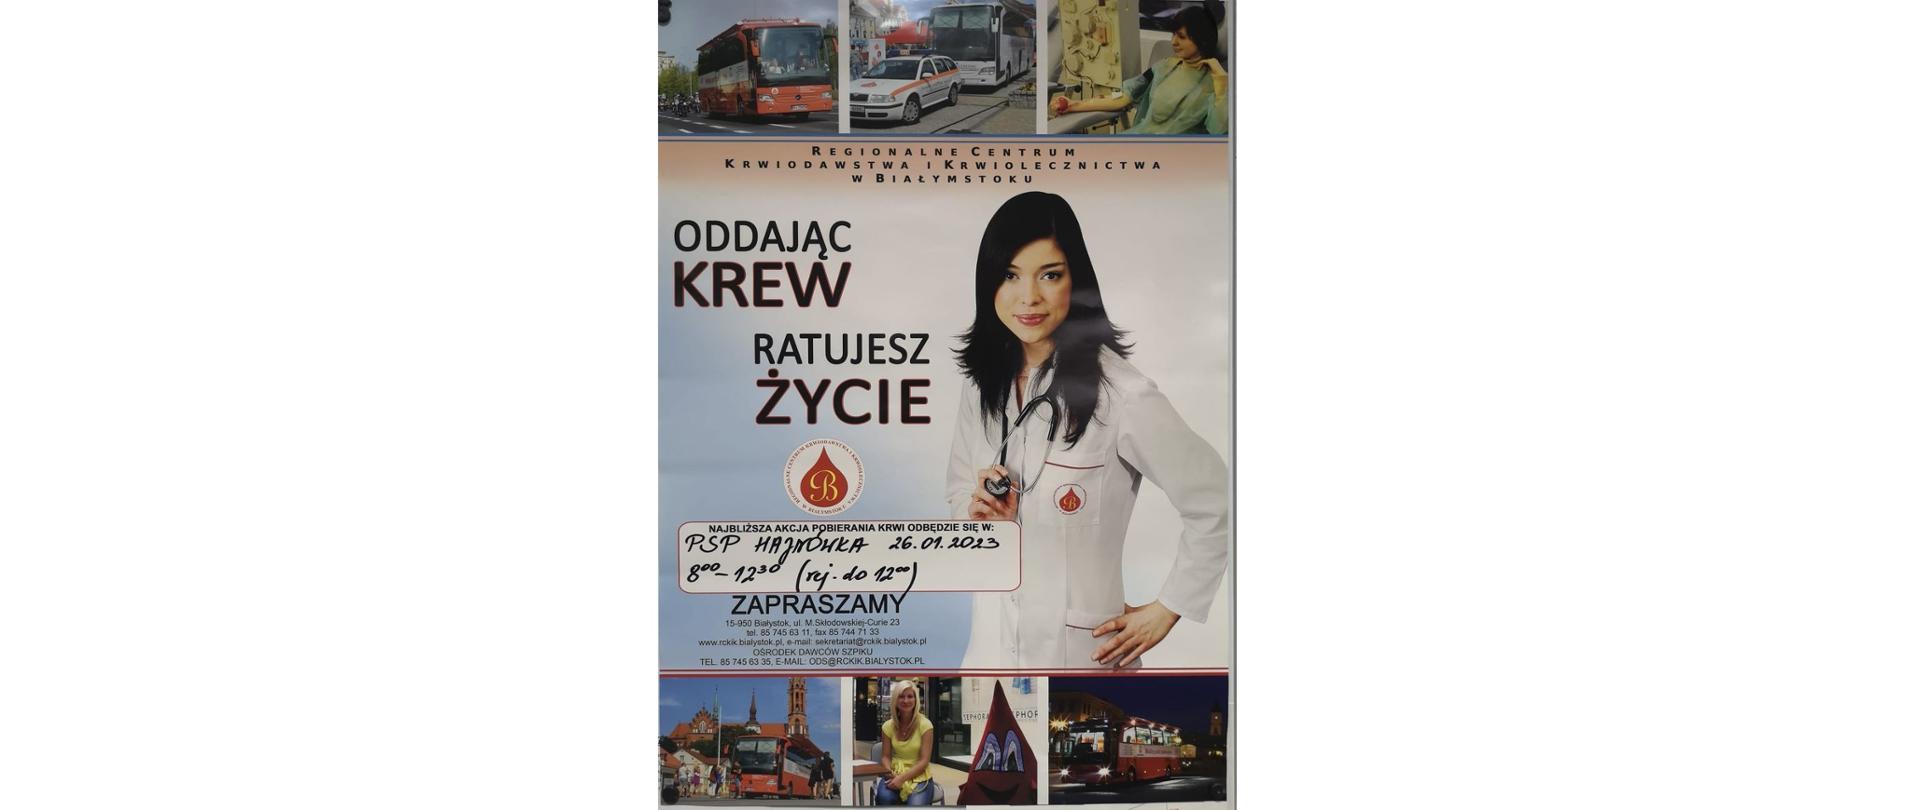 Plakat z kobietą w białym kitlu obok napis: "Oddając krew ratujesz życie".